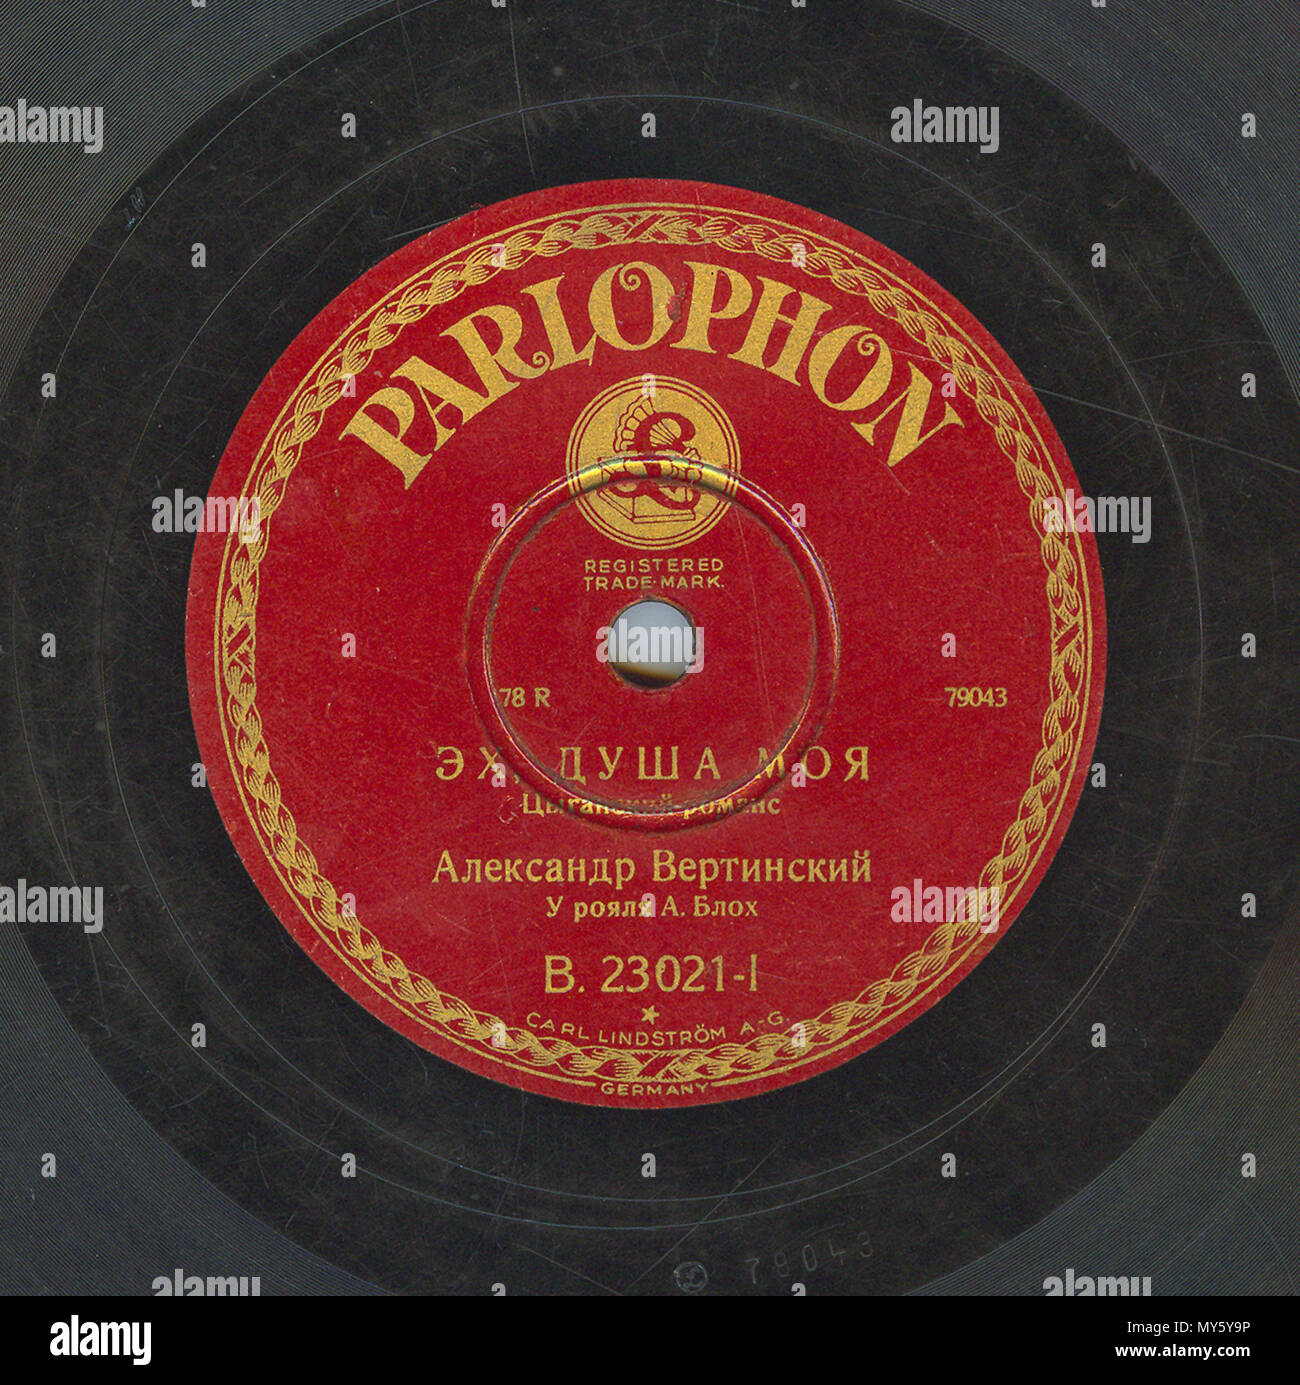 . Inglese: Vertinsky Parlophone B.23021 01 . 6 aprile 2010, 11:59:18. Parlophone 548 Vertinsky Parlophone B.23021 01 Foto Stock